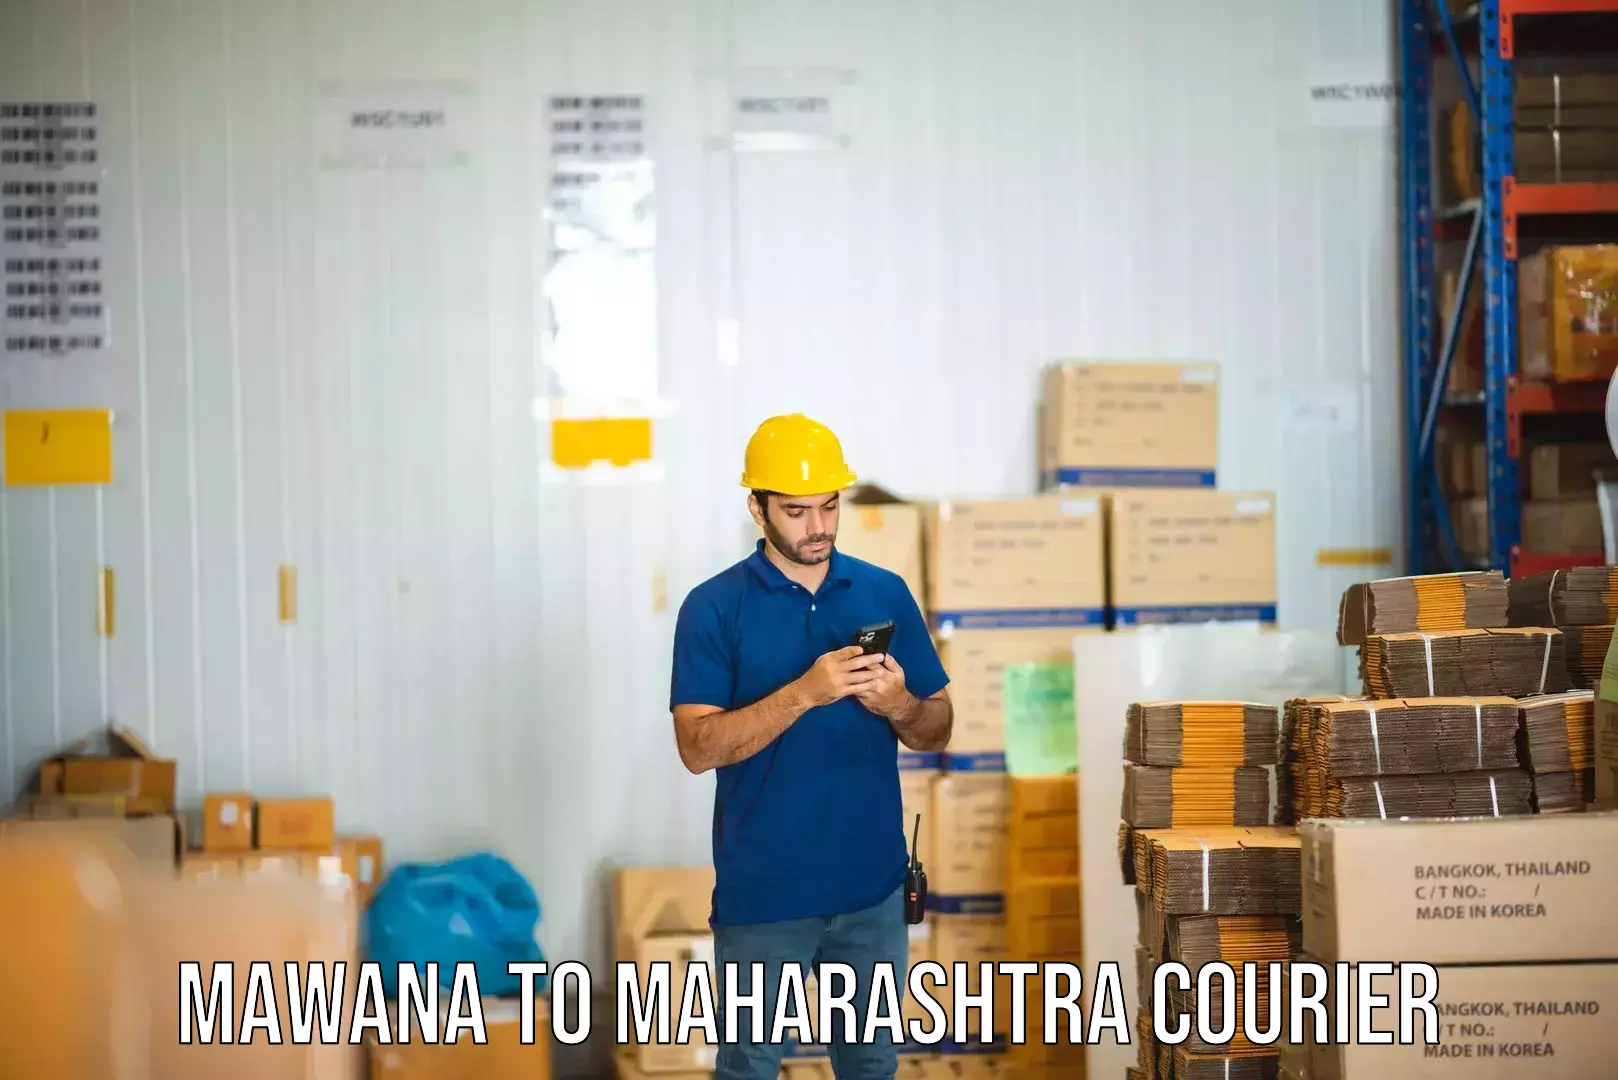 High-speed logistics services Mawana to Maharashtra